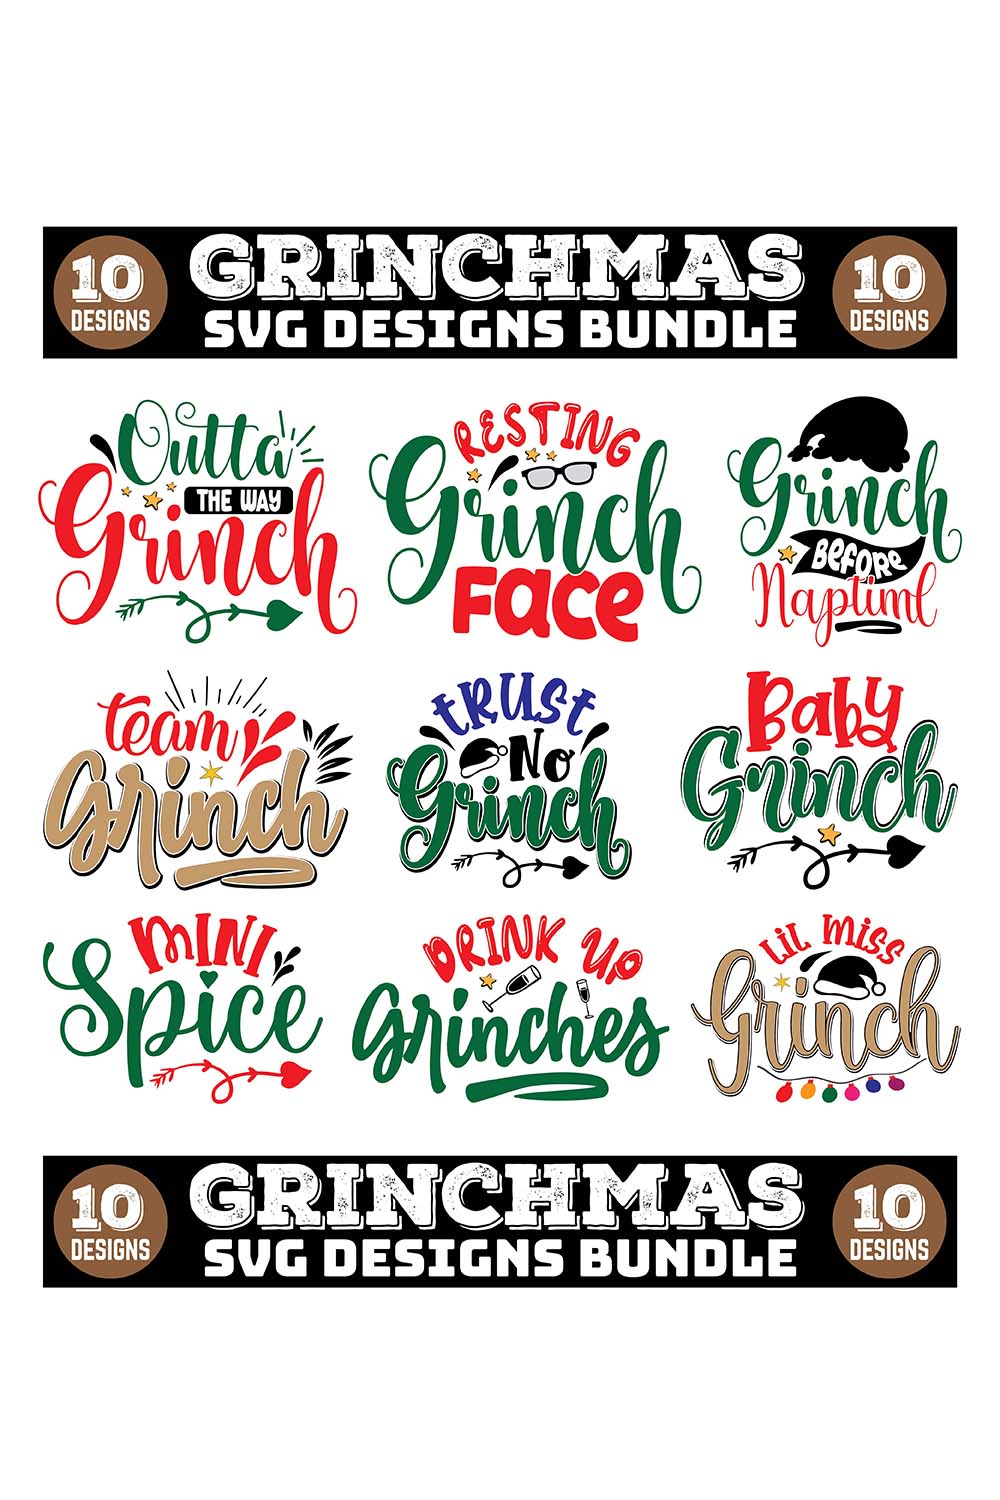 Grinch SVG Designs Bundle pinterest image.